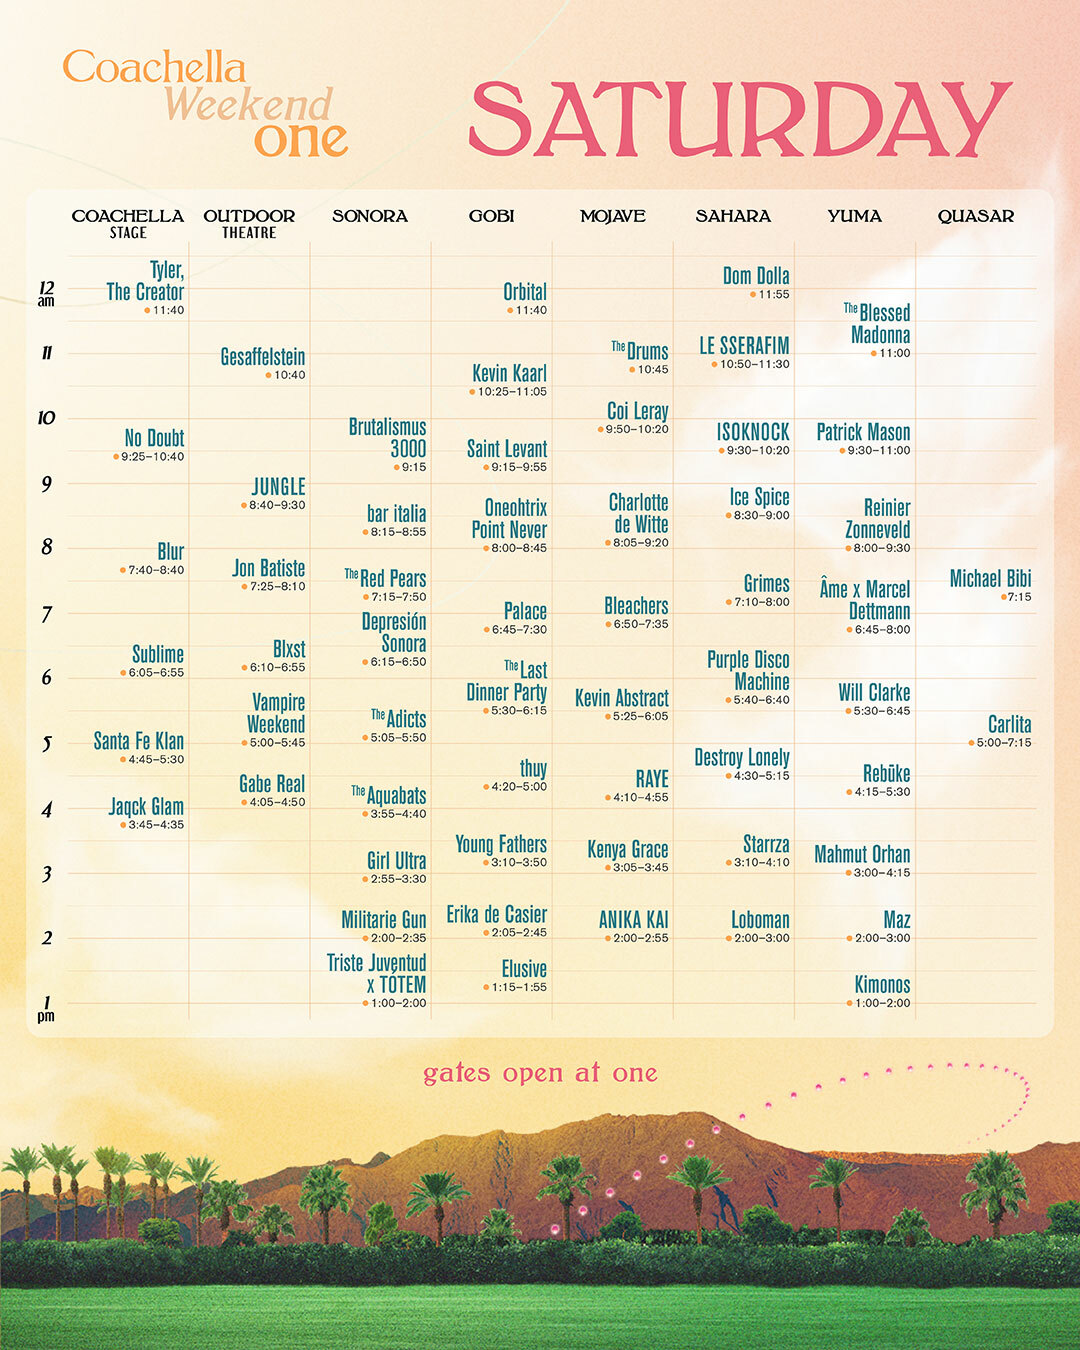 Coachella weekend schedule on one Saturday